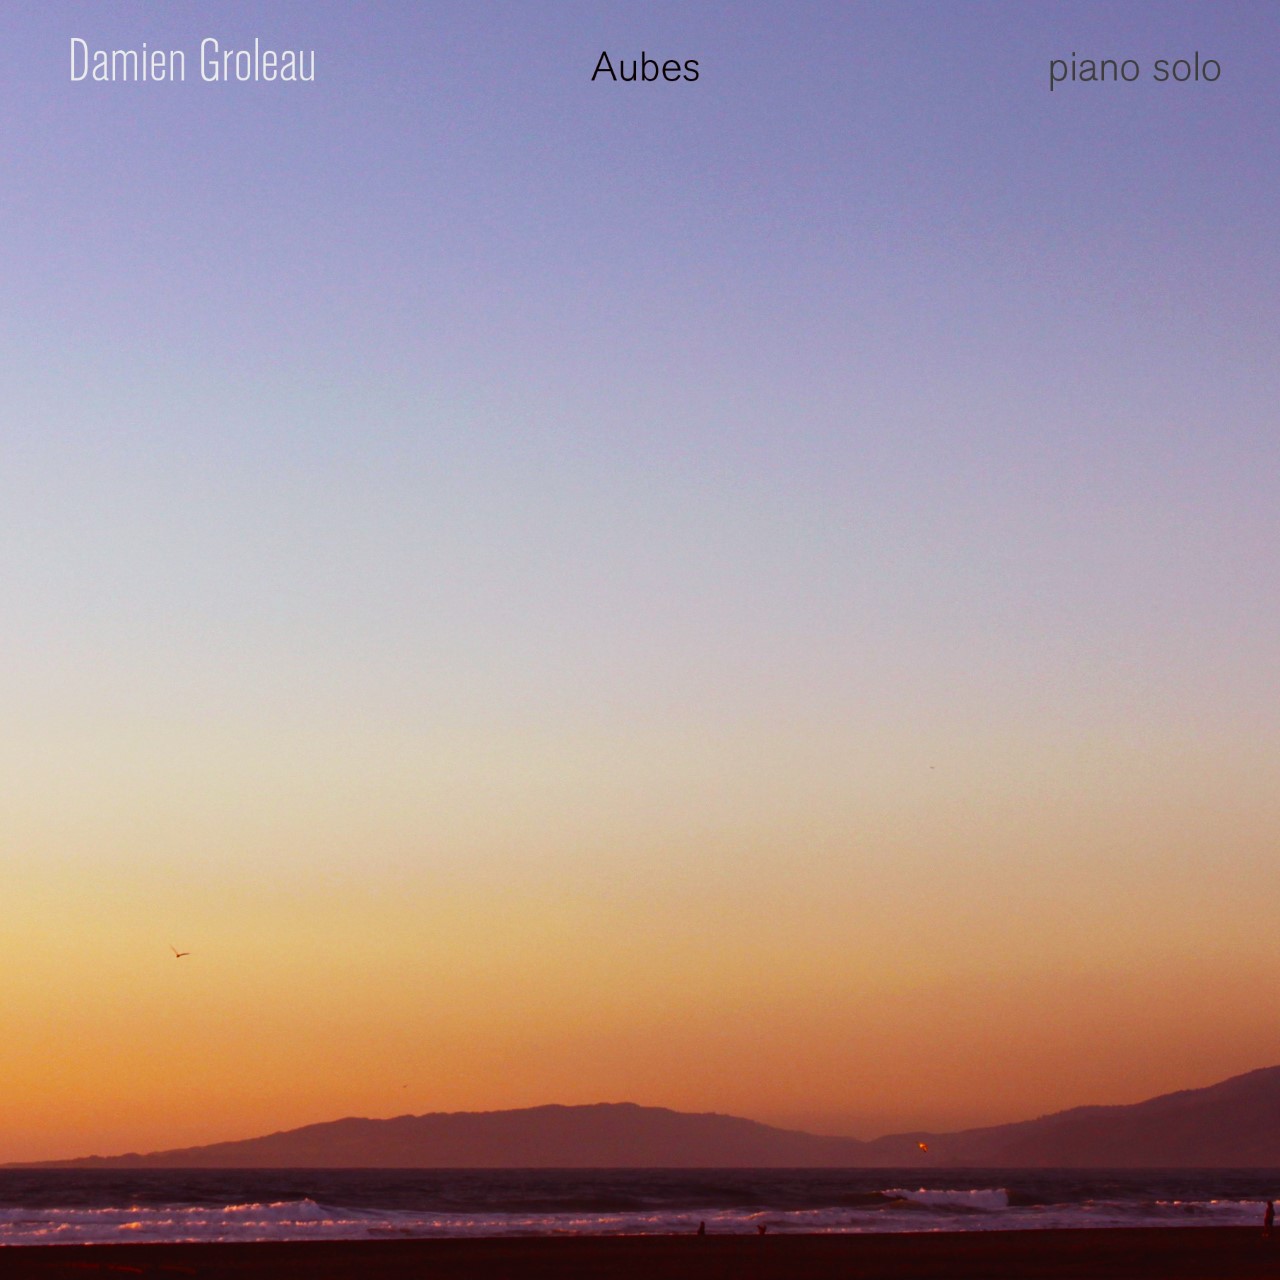     Damien Groleau,             pianiste, flûtiste, compositeur
     - Album Aubes